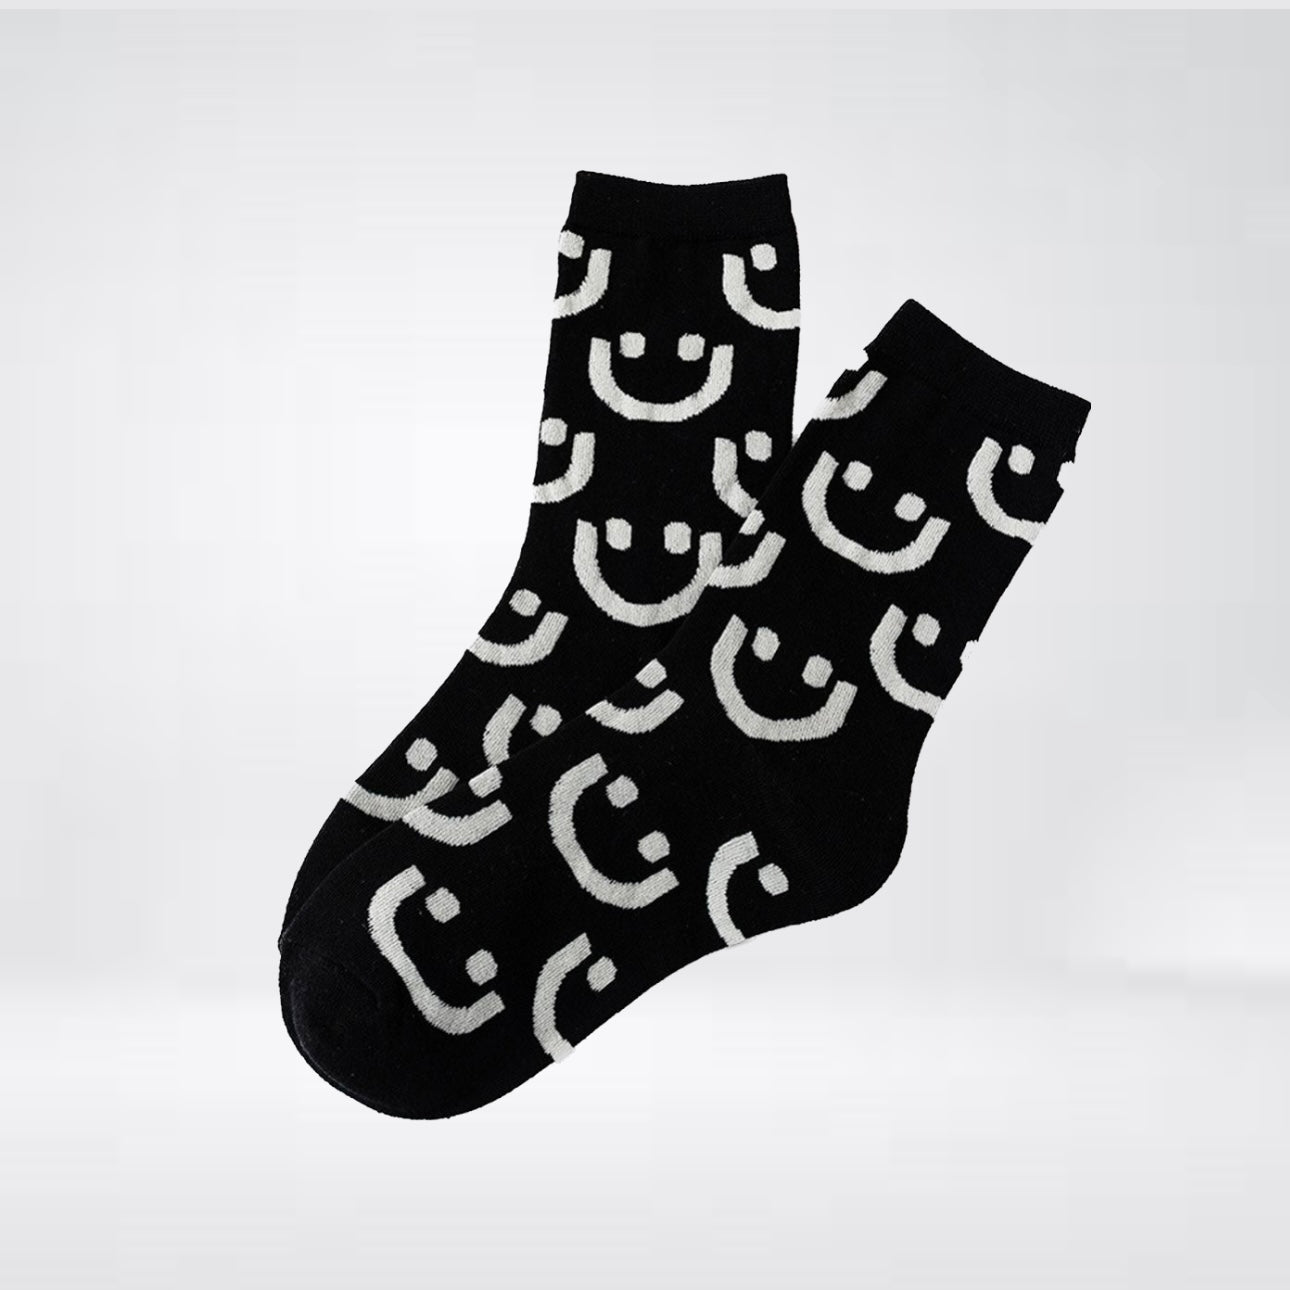 Socken "Allover" in Schwarz mit grau-weißen Smileys